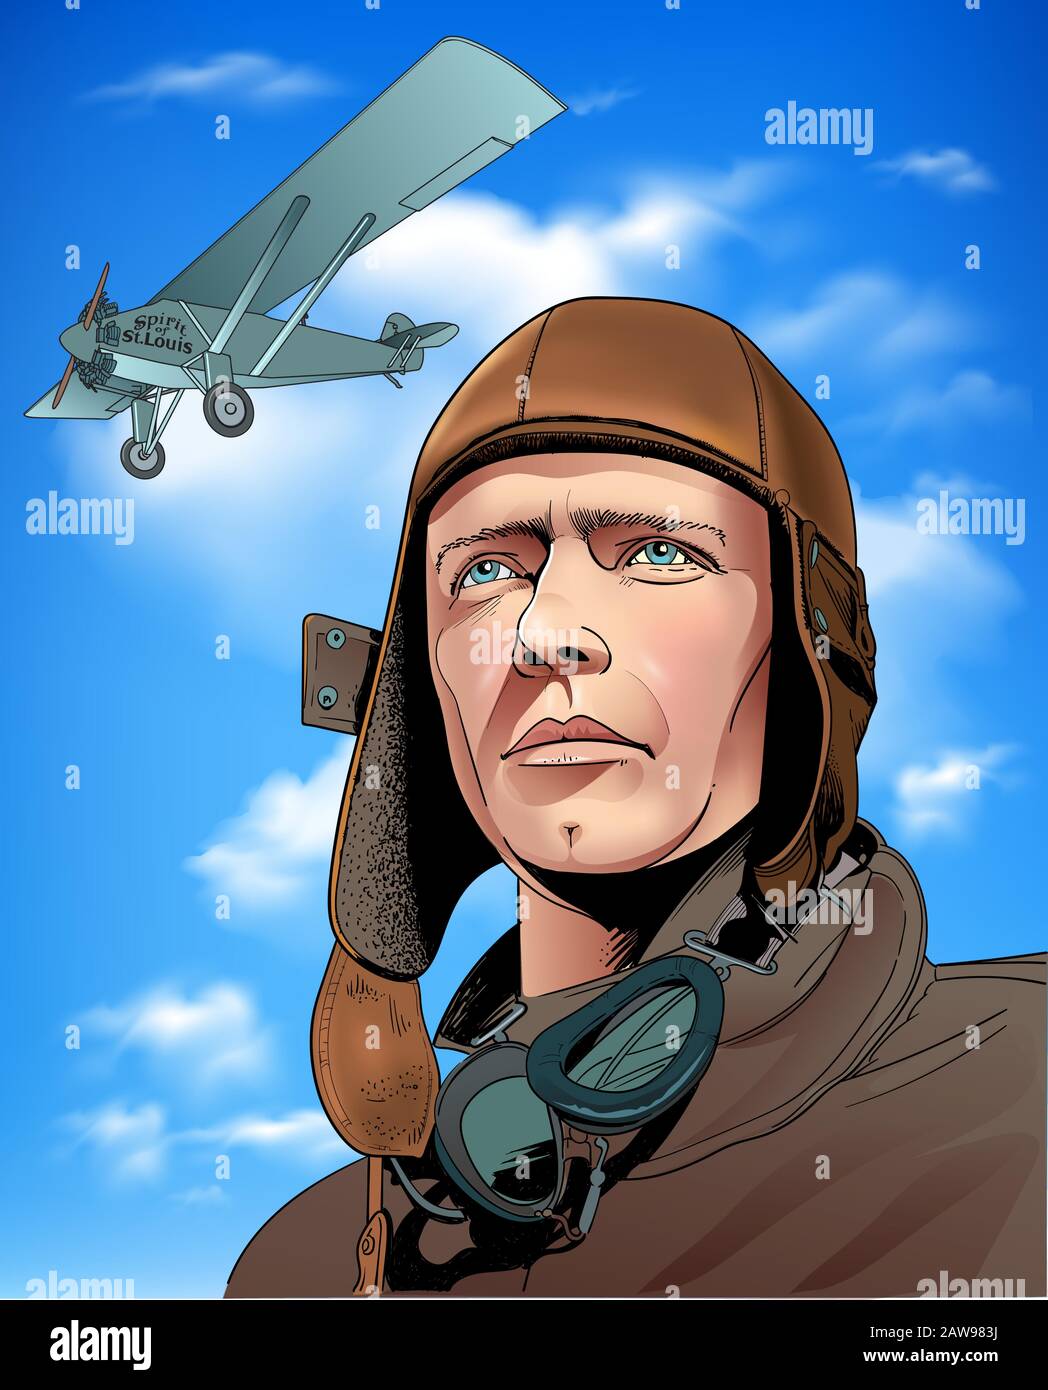 Charles Augustus Lindbergh war ein US-amerikanischer Flieger, Militäroffizier, Autor, Erfinder und Aktivist. Stock Vektor